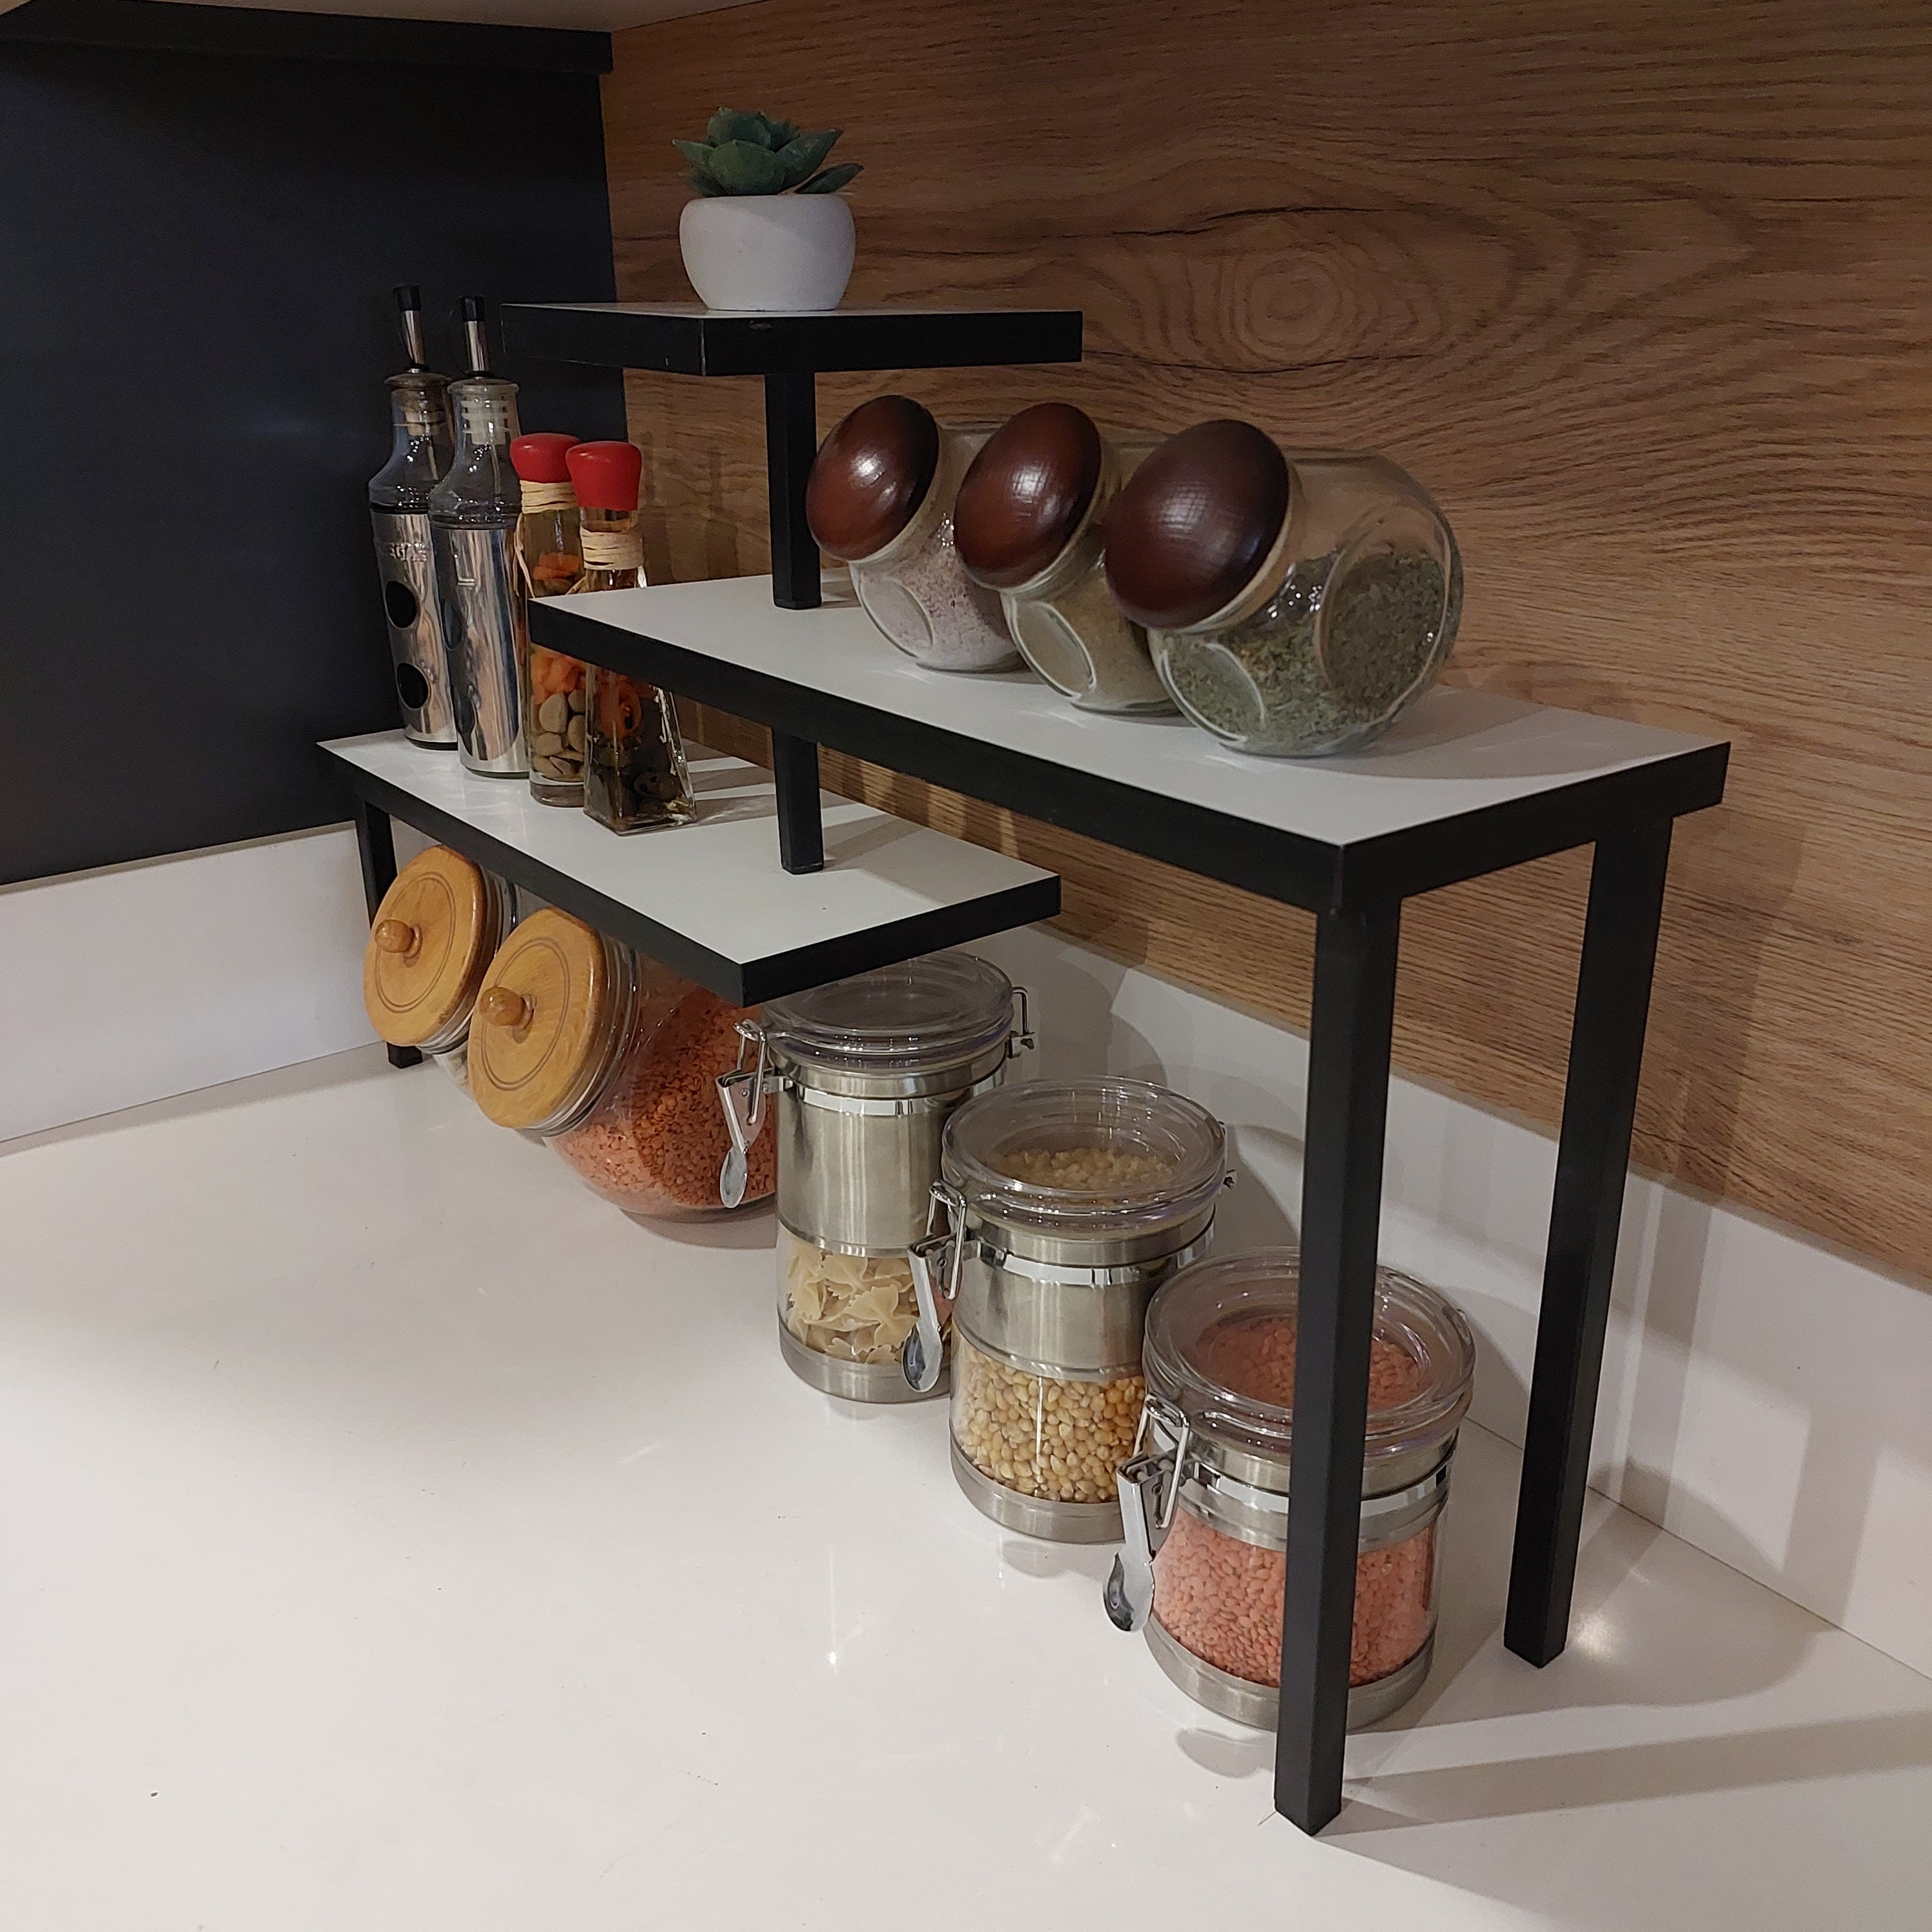 Organizador de encimera, estante esquinero móvil de 3 niveles para cocina,  baño, especiero, área de café, sobre fregadero, tocador (marrón rústico)